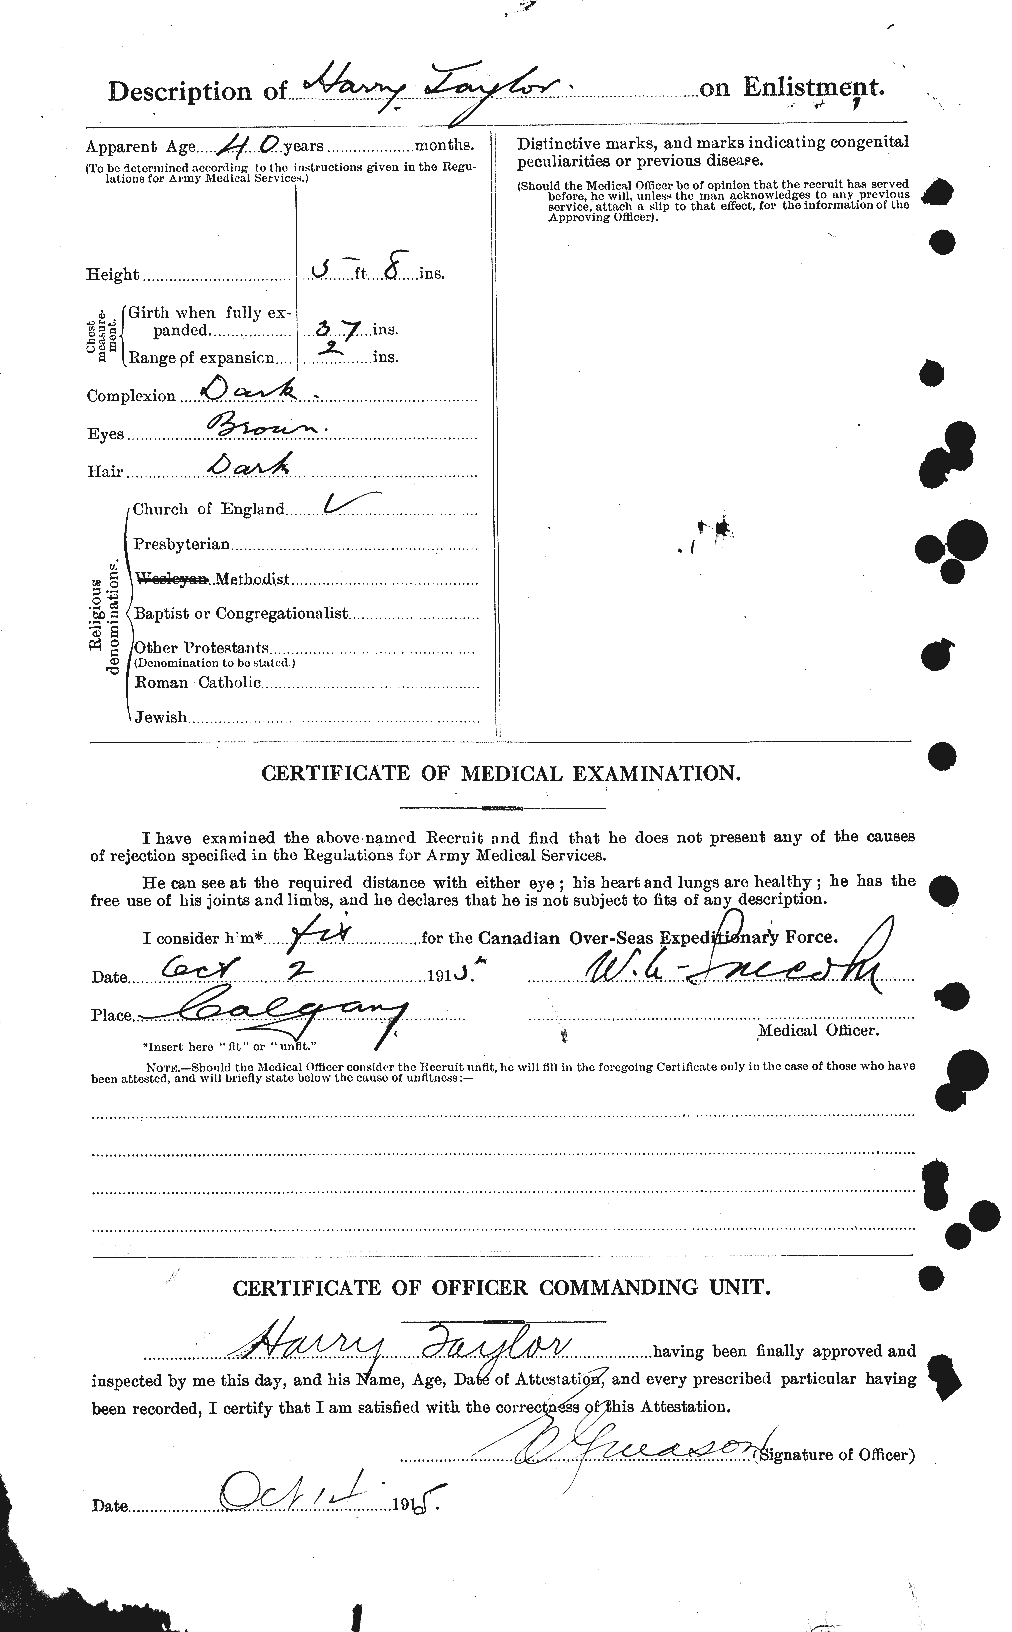 Dossiers du Personnel de la Première Guerre mondiale - CEC 626476b